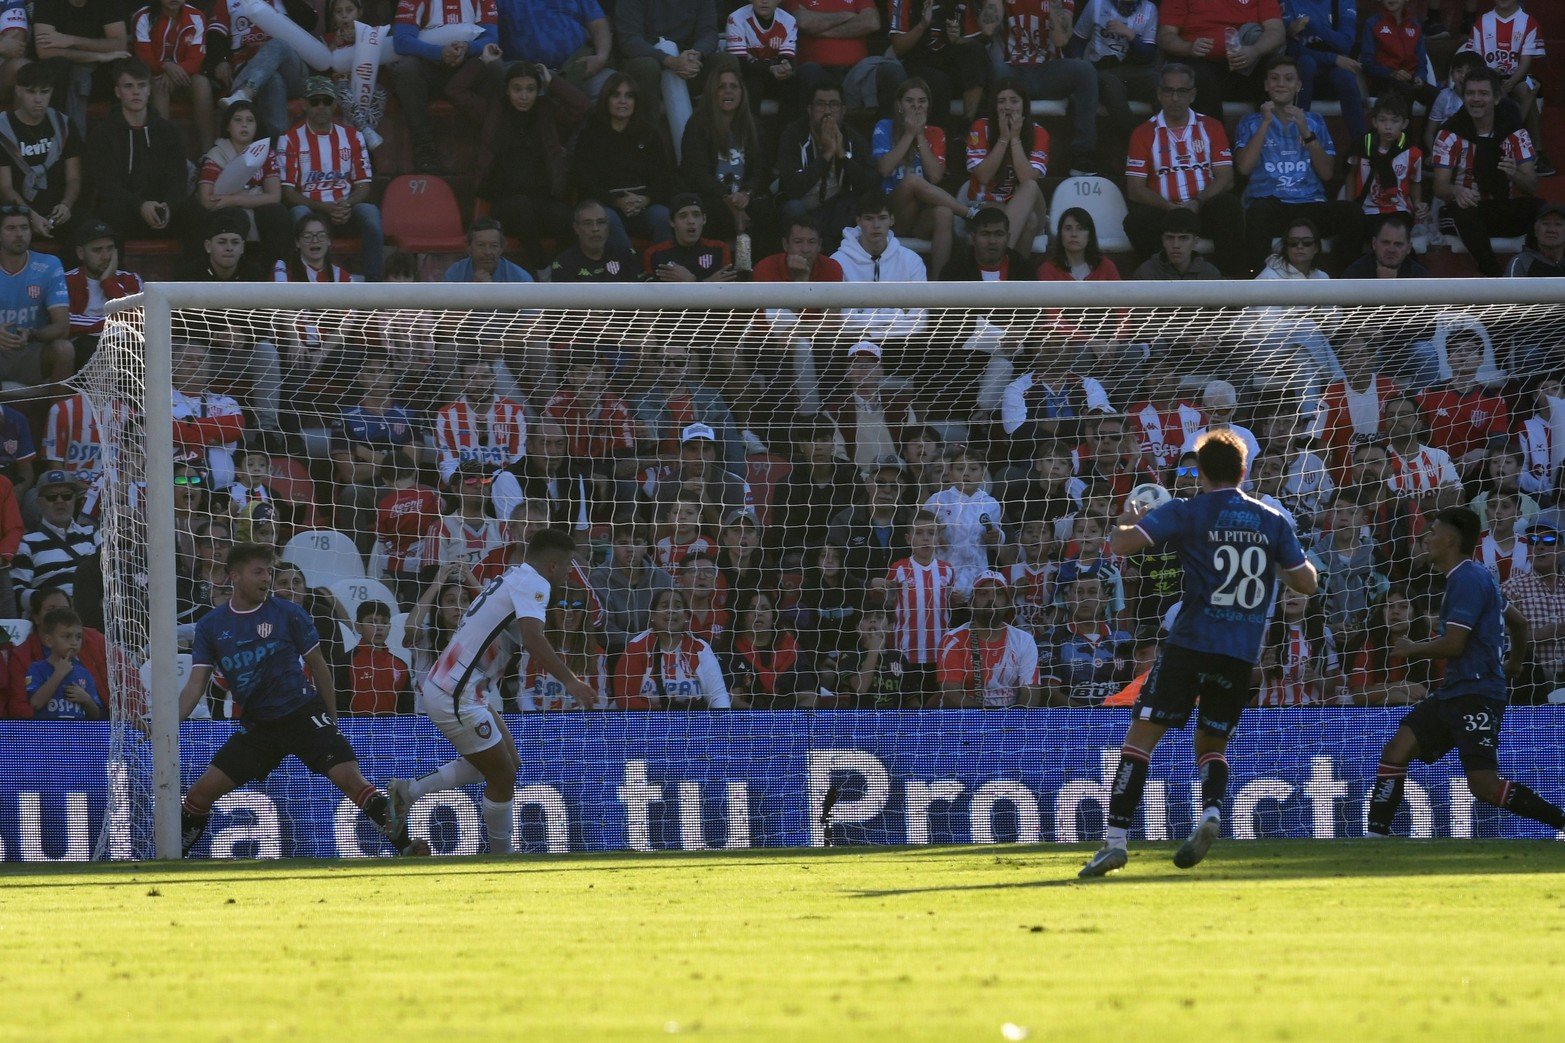 El primer gol lo marcó San Lorenzo en el primer tiempo. Unión le ganó 2 a 1 a San Lorenzo y se mantiene en la punta del torneo disputadas cinco fechas.